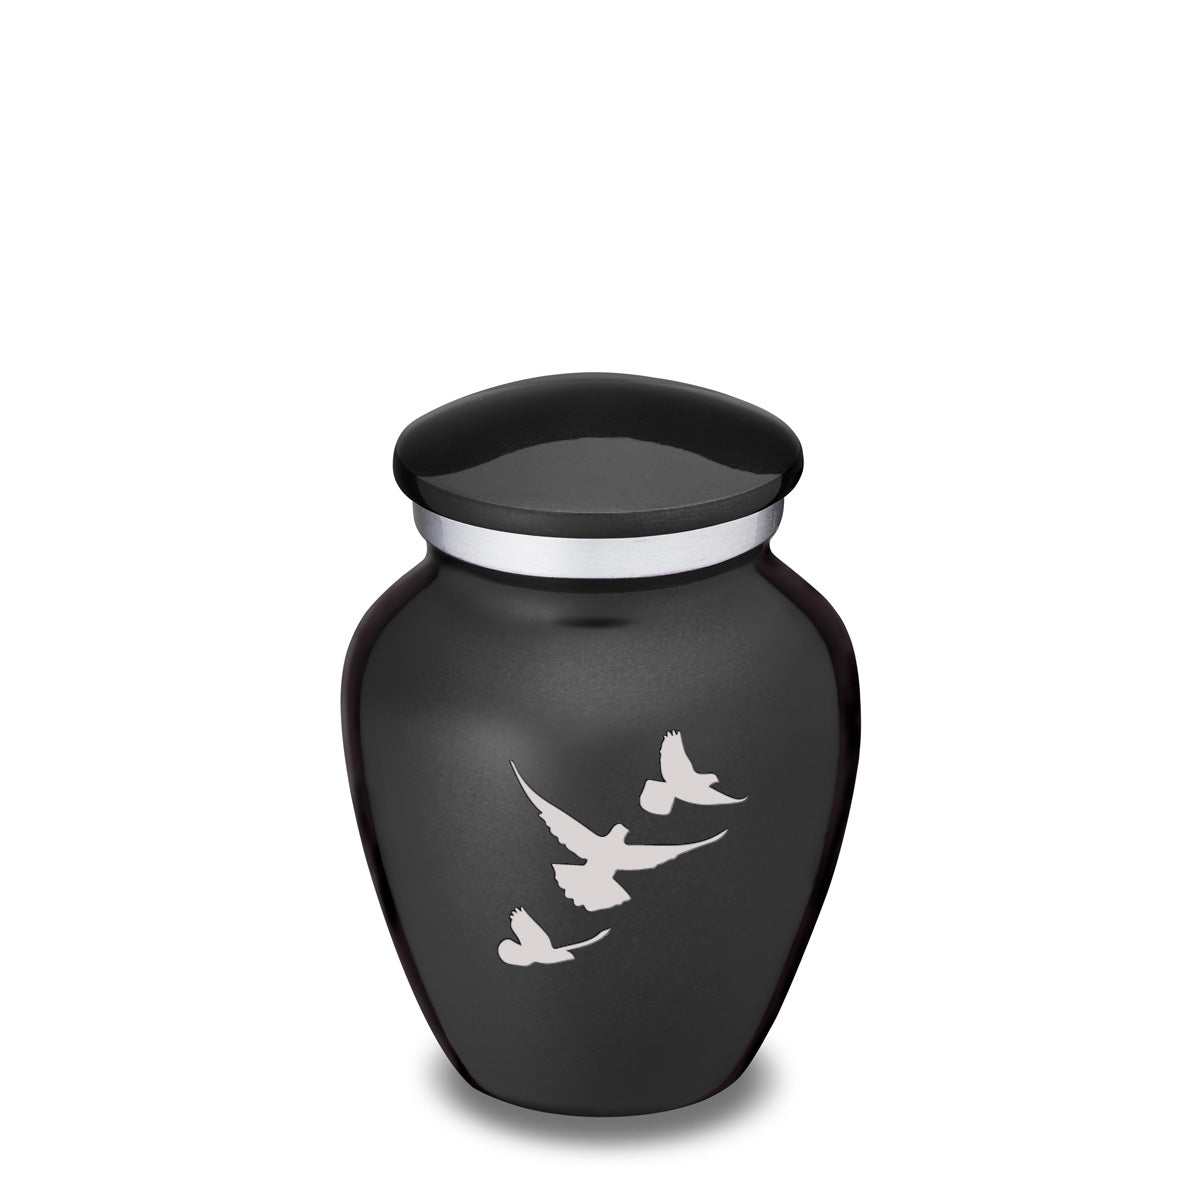 Keepsake Embrace Charcoal Doves Cremation Urn